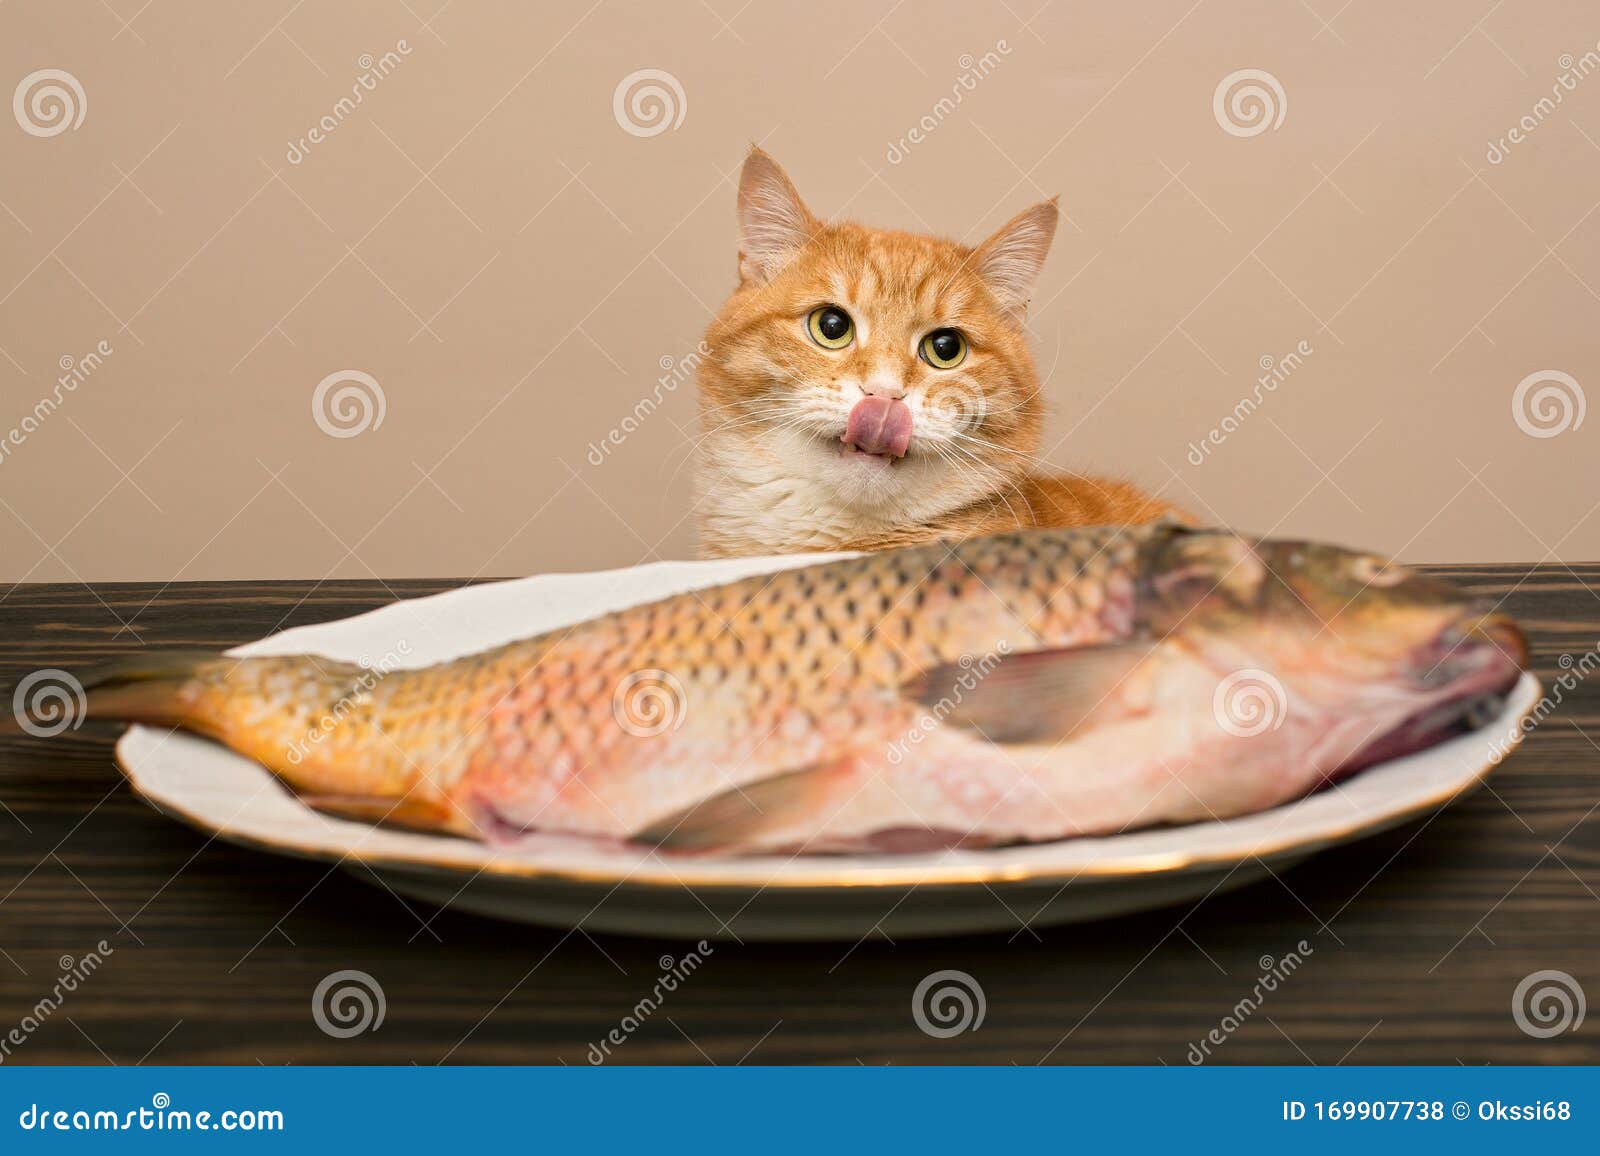 高清晰动物之猫和金鱼摄影图片